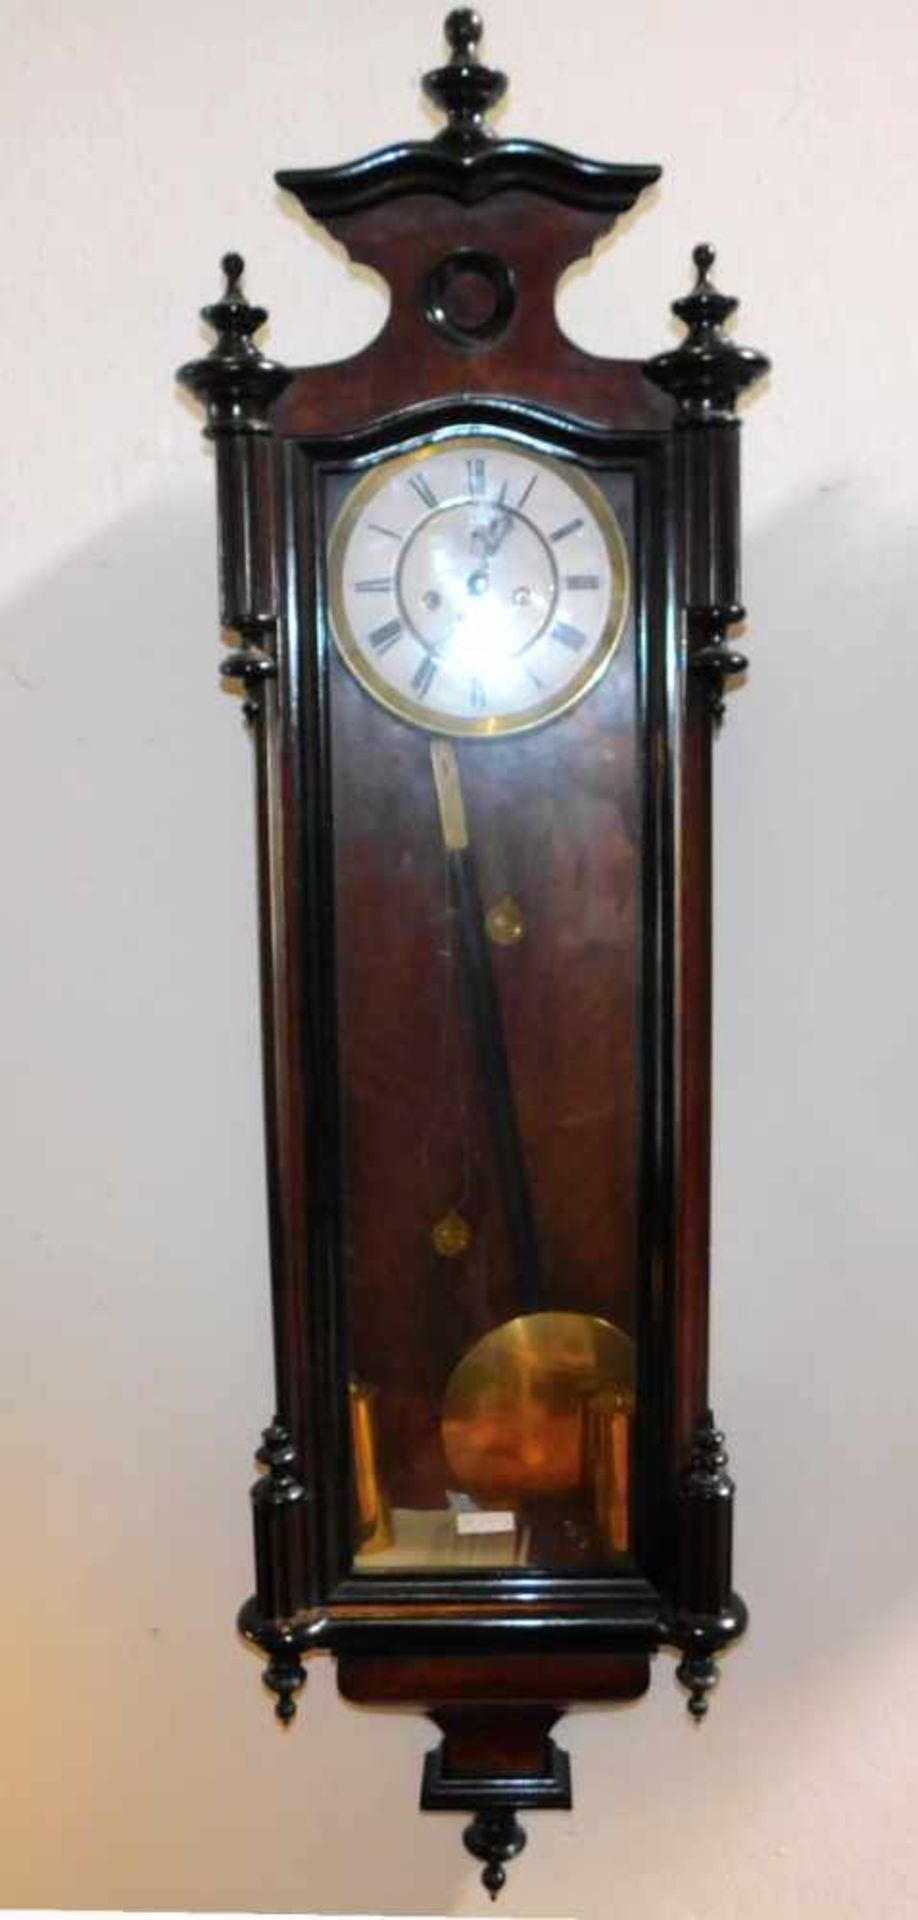 Wiener Regulator, Lenzkirch,Uhrwerk gepunzt u. nummeriert, Nussbaum, Spätbiedermeier um 1870,Front